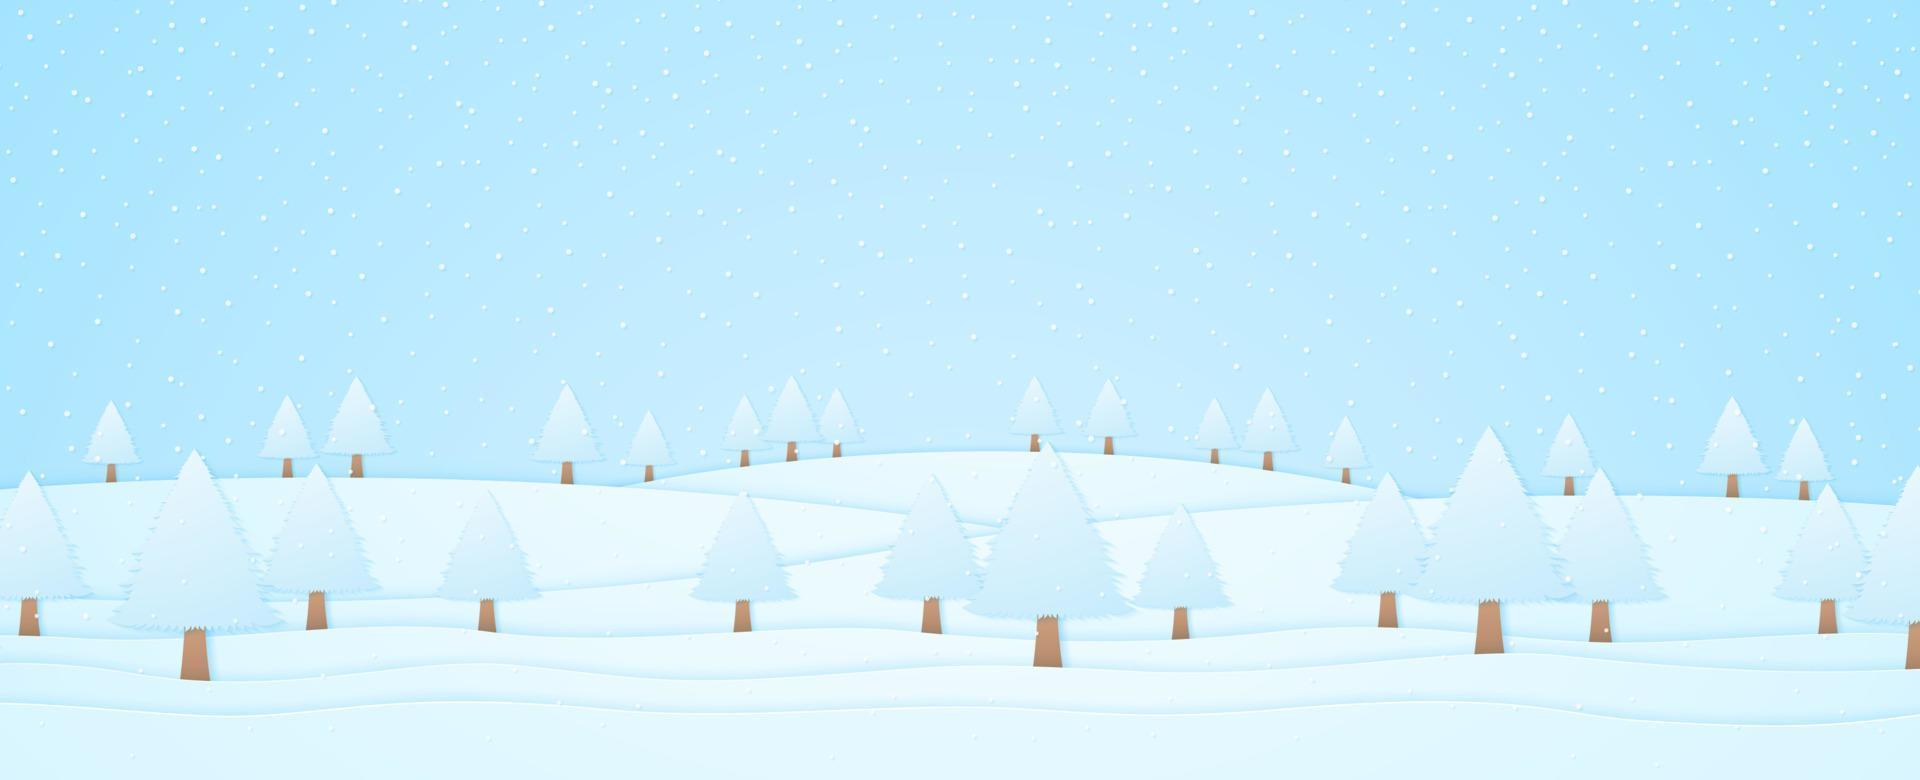 vinterlandskap, träd på kulle och snö som faller, papper konststil vektor